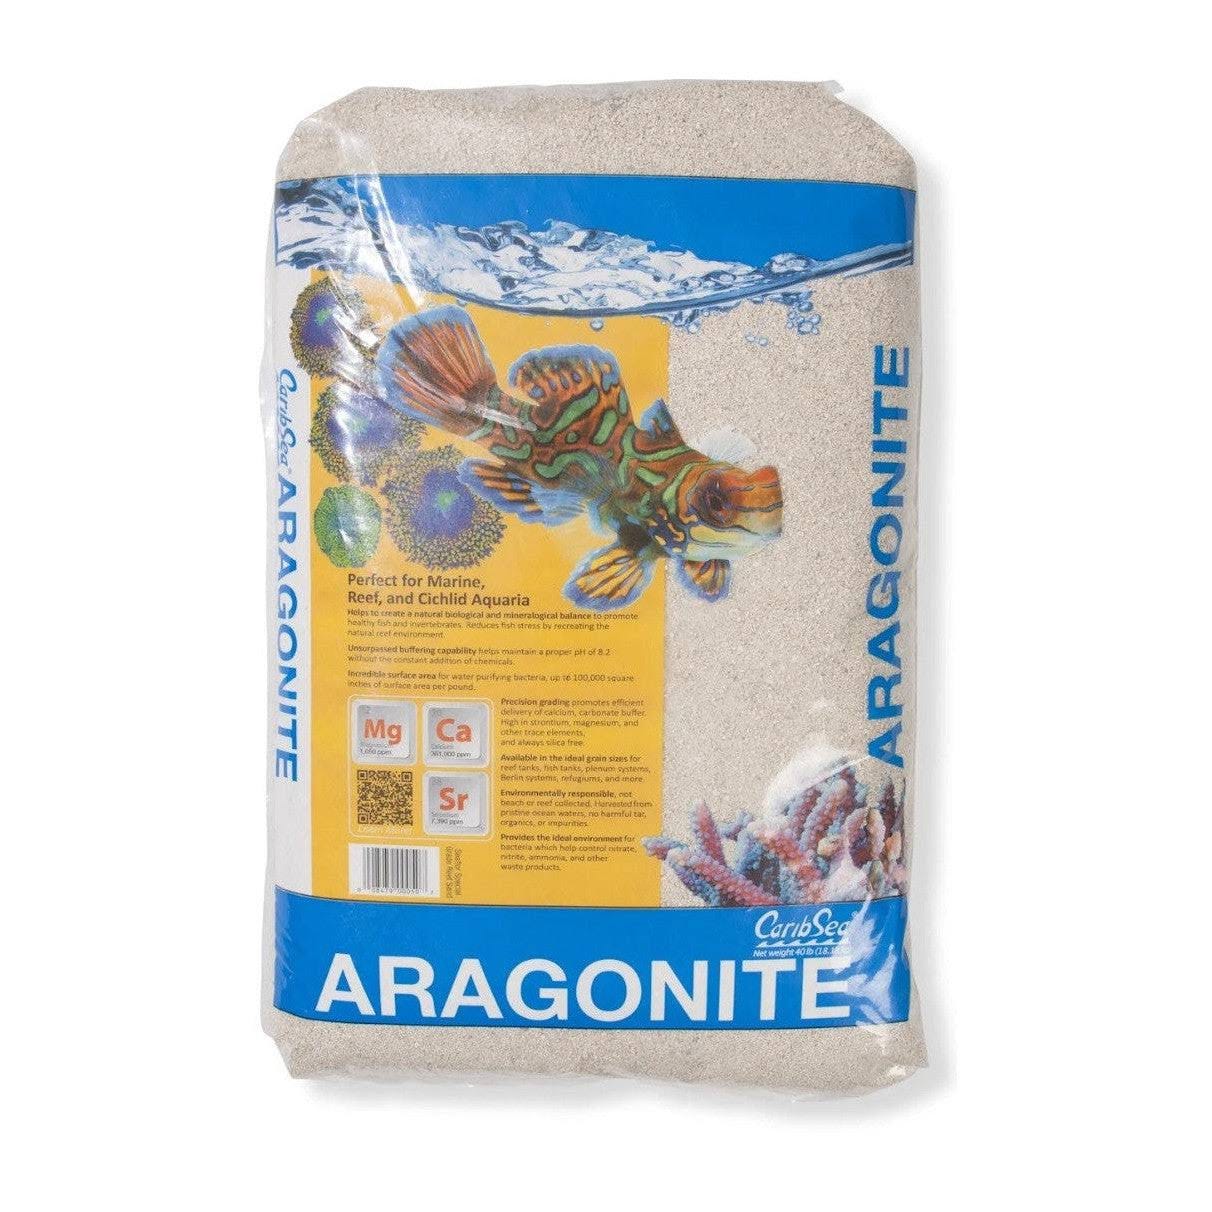 CaribSea Aragonite Reef Sand - Premium Aquarium Substrate for Marine Tanks | Image